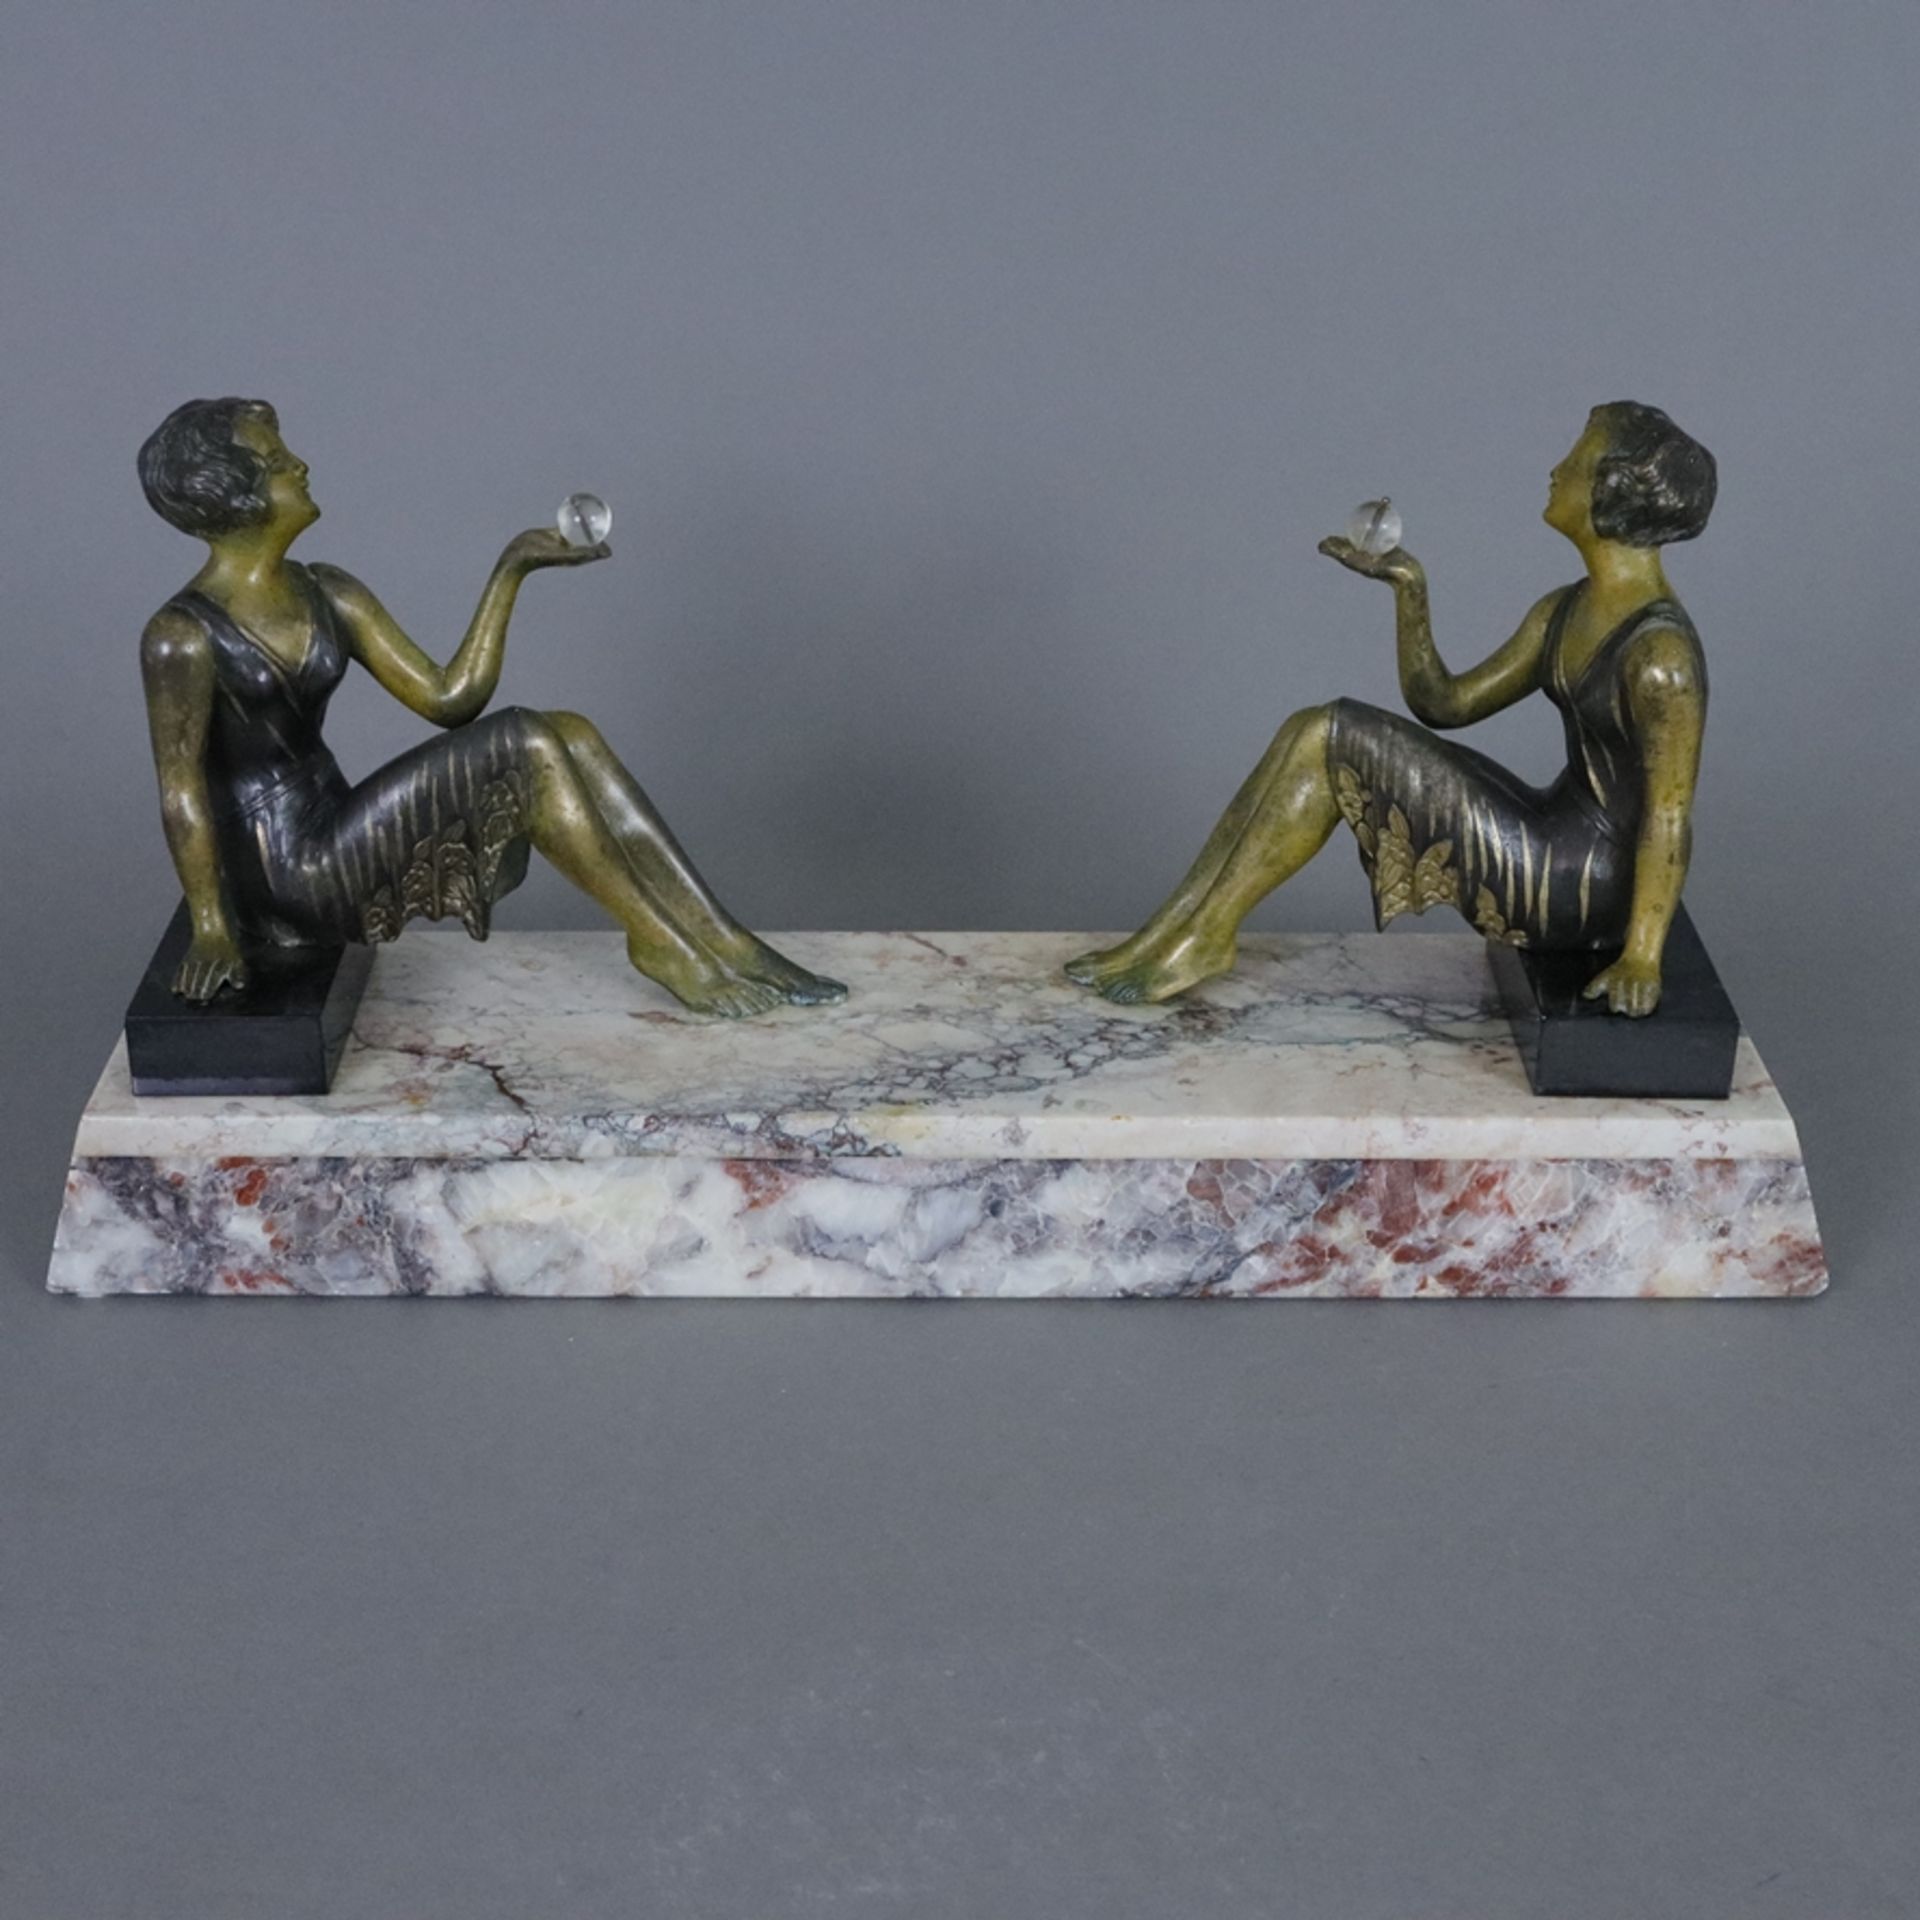 Figurenpaar im Art Déco-Stil auf Steinsockel - 20. Jh., zwei sich gegenüber sitzende junge Damen, s